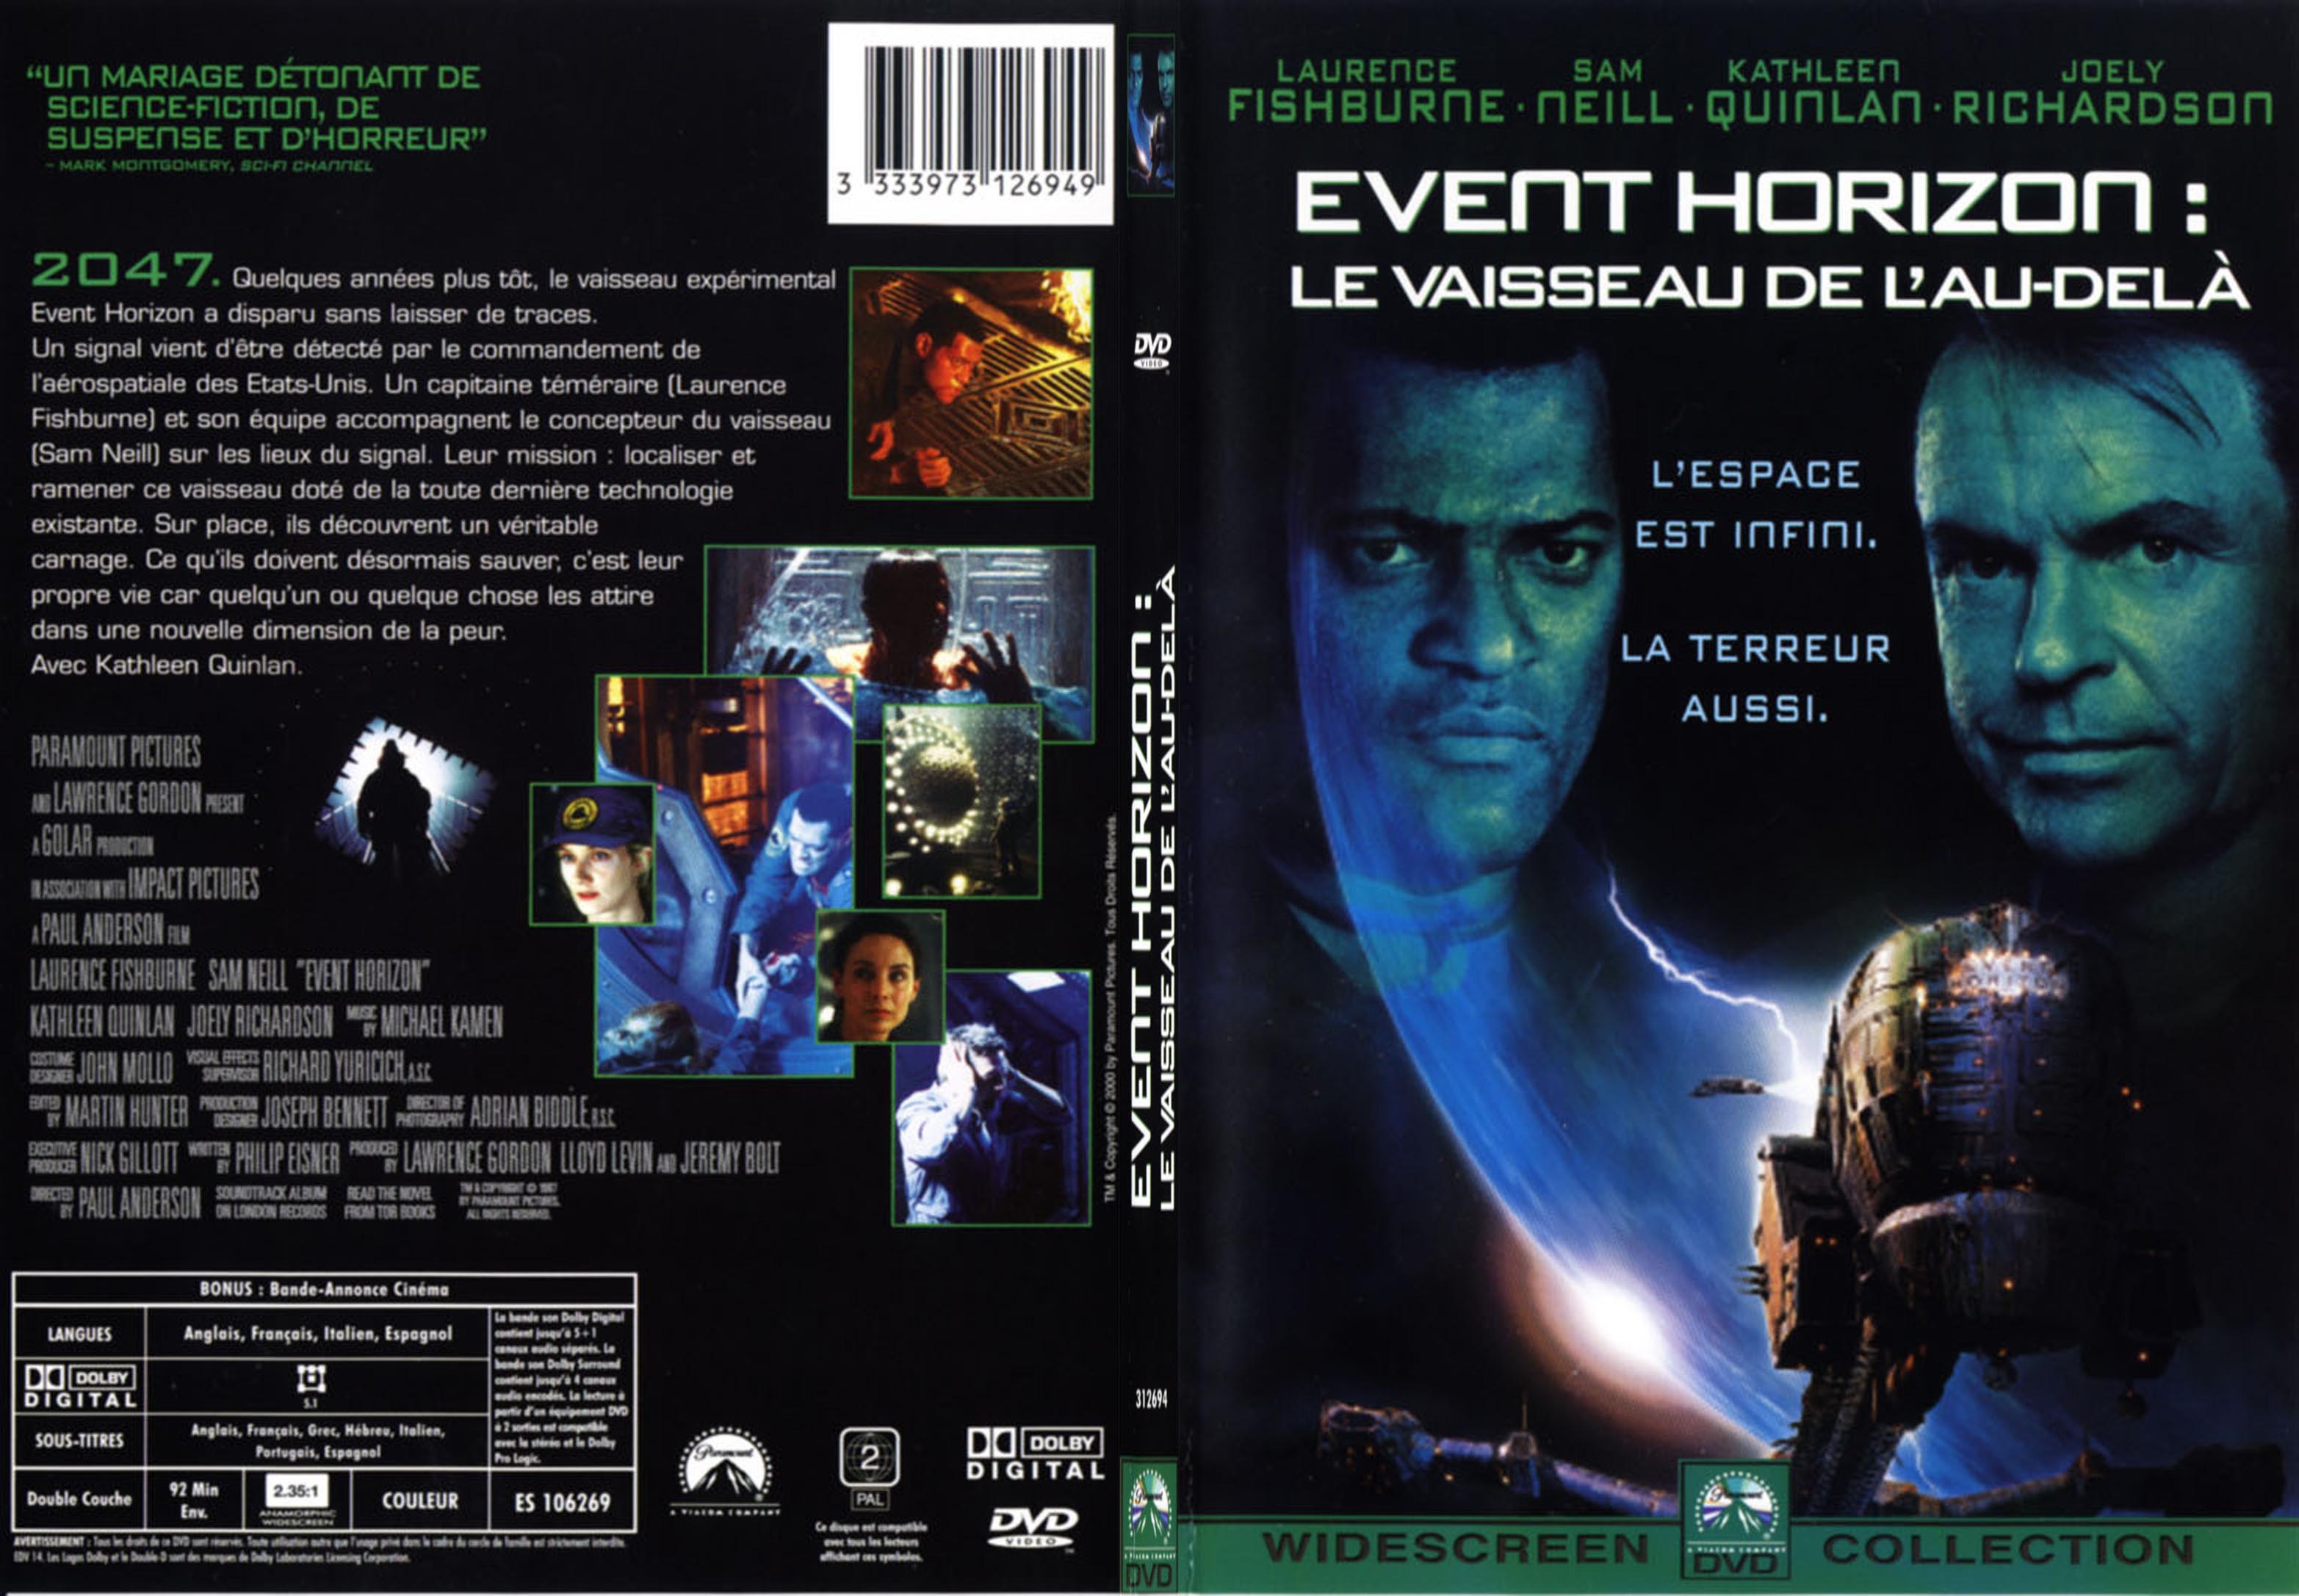 Jaquette DVD Event horizon - SLIM